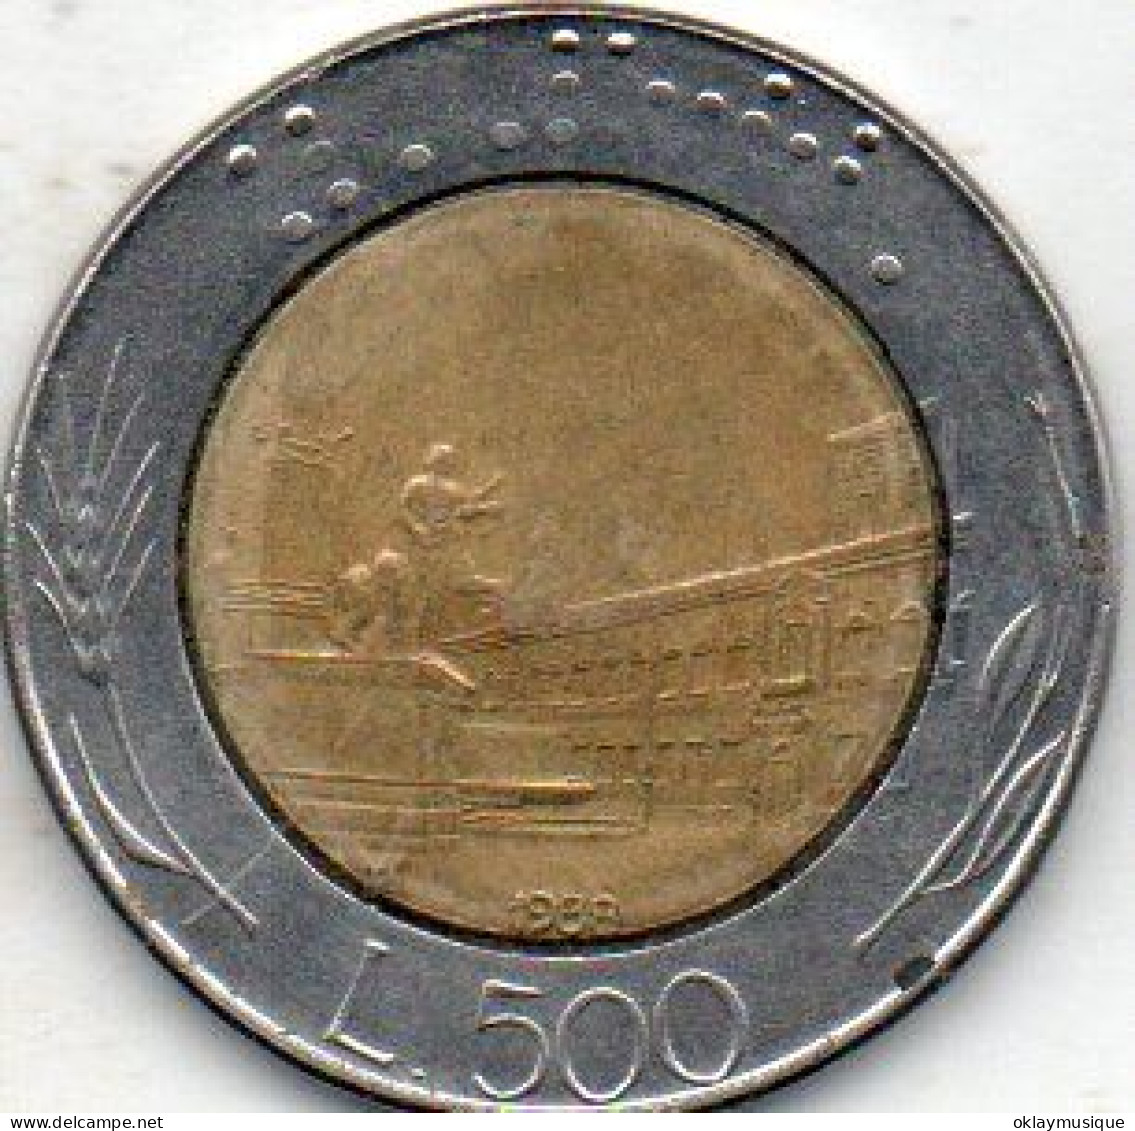 500 Lires 1988 - 500 Lire